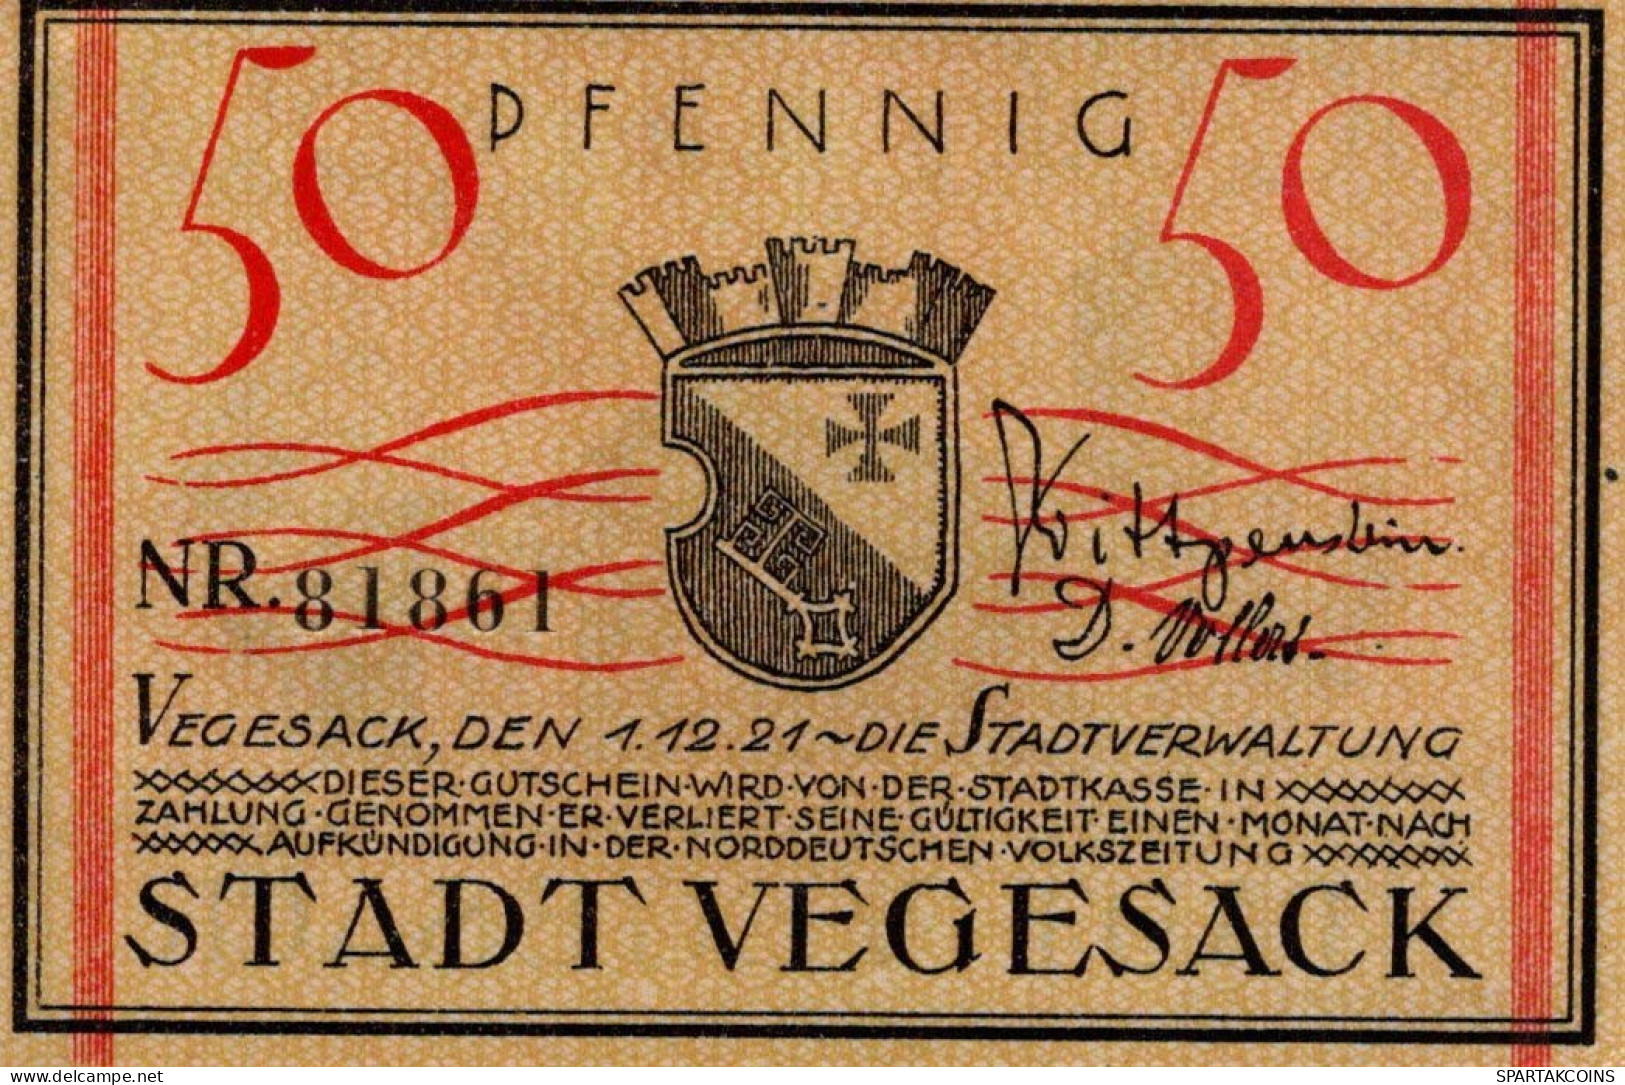 50 PFENNIG 1921 Stadt VEGESACK Bremen UNC DEUTSCHLAND Notgeld Banknote #PJ029 - [11] Local Banknote Issues